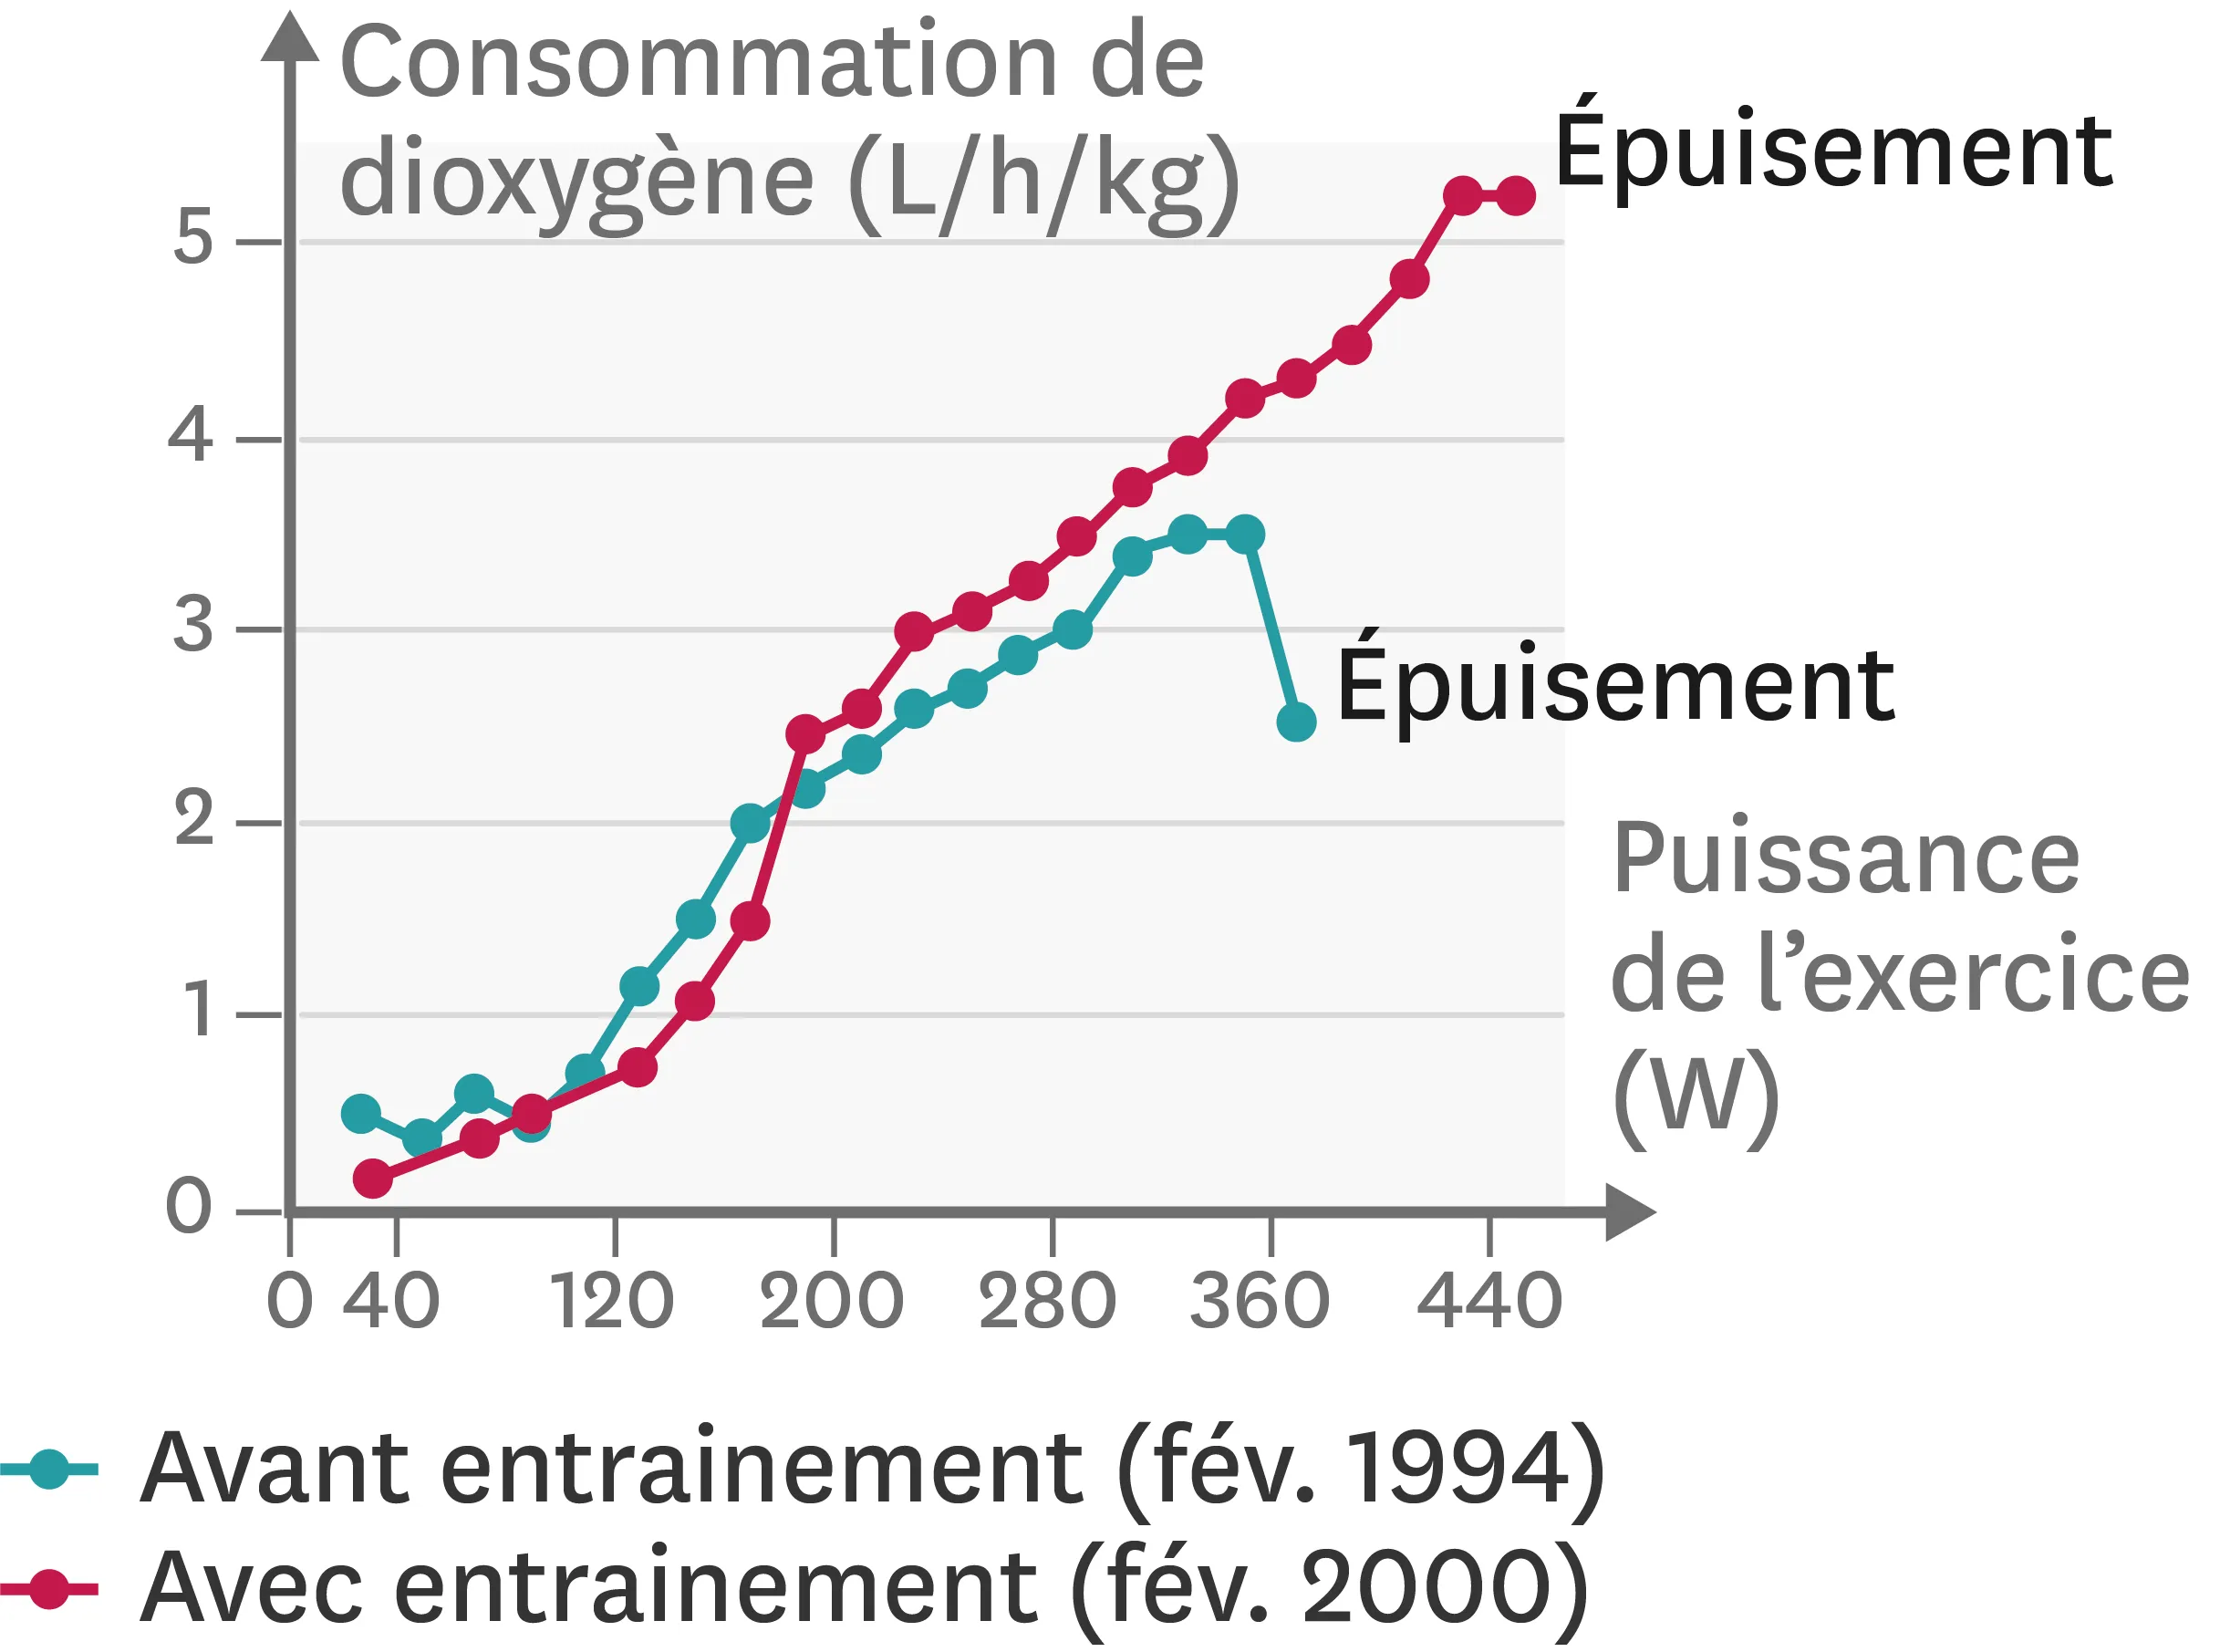 l'effet de six années d'entrainement sur la consommation de dioxygène d'un individu.